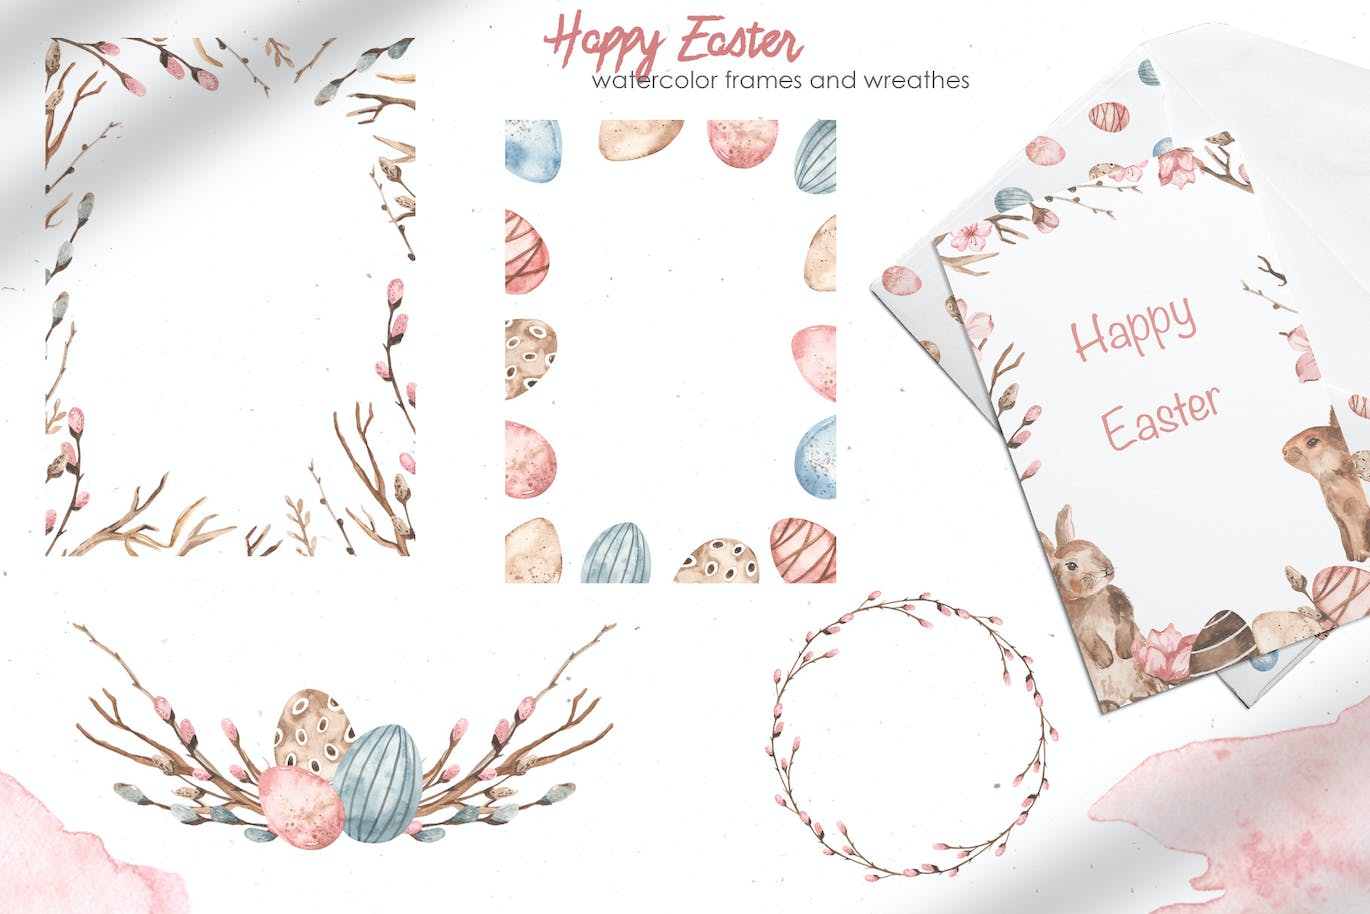 复活节快乐元素水彩画集 Happy Easter watercolor APP UI 第5张